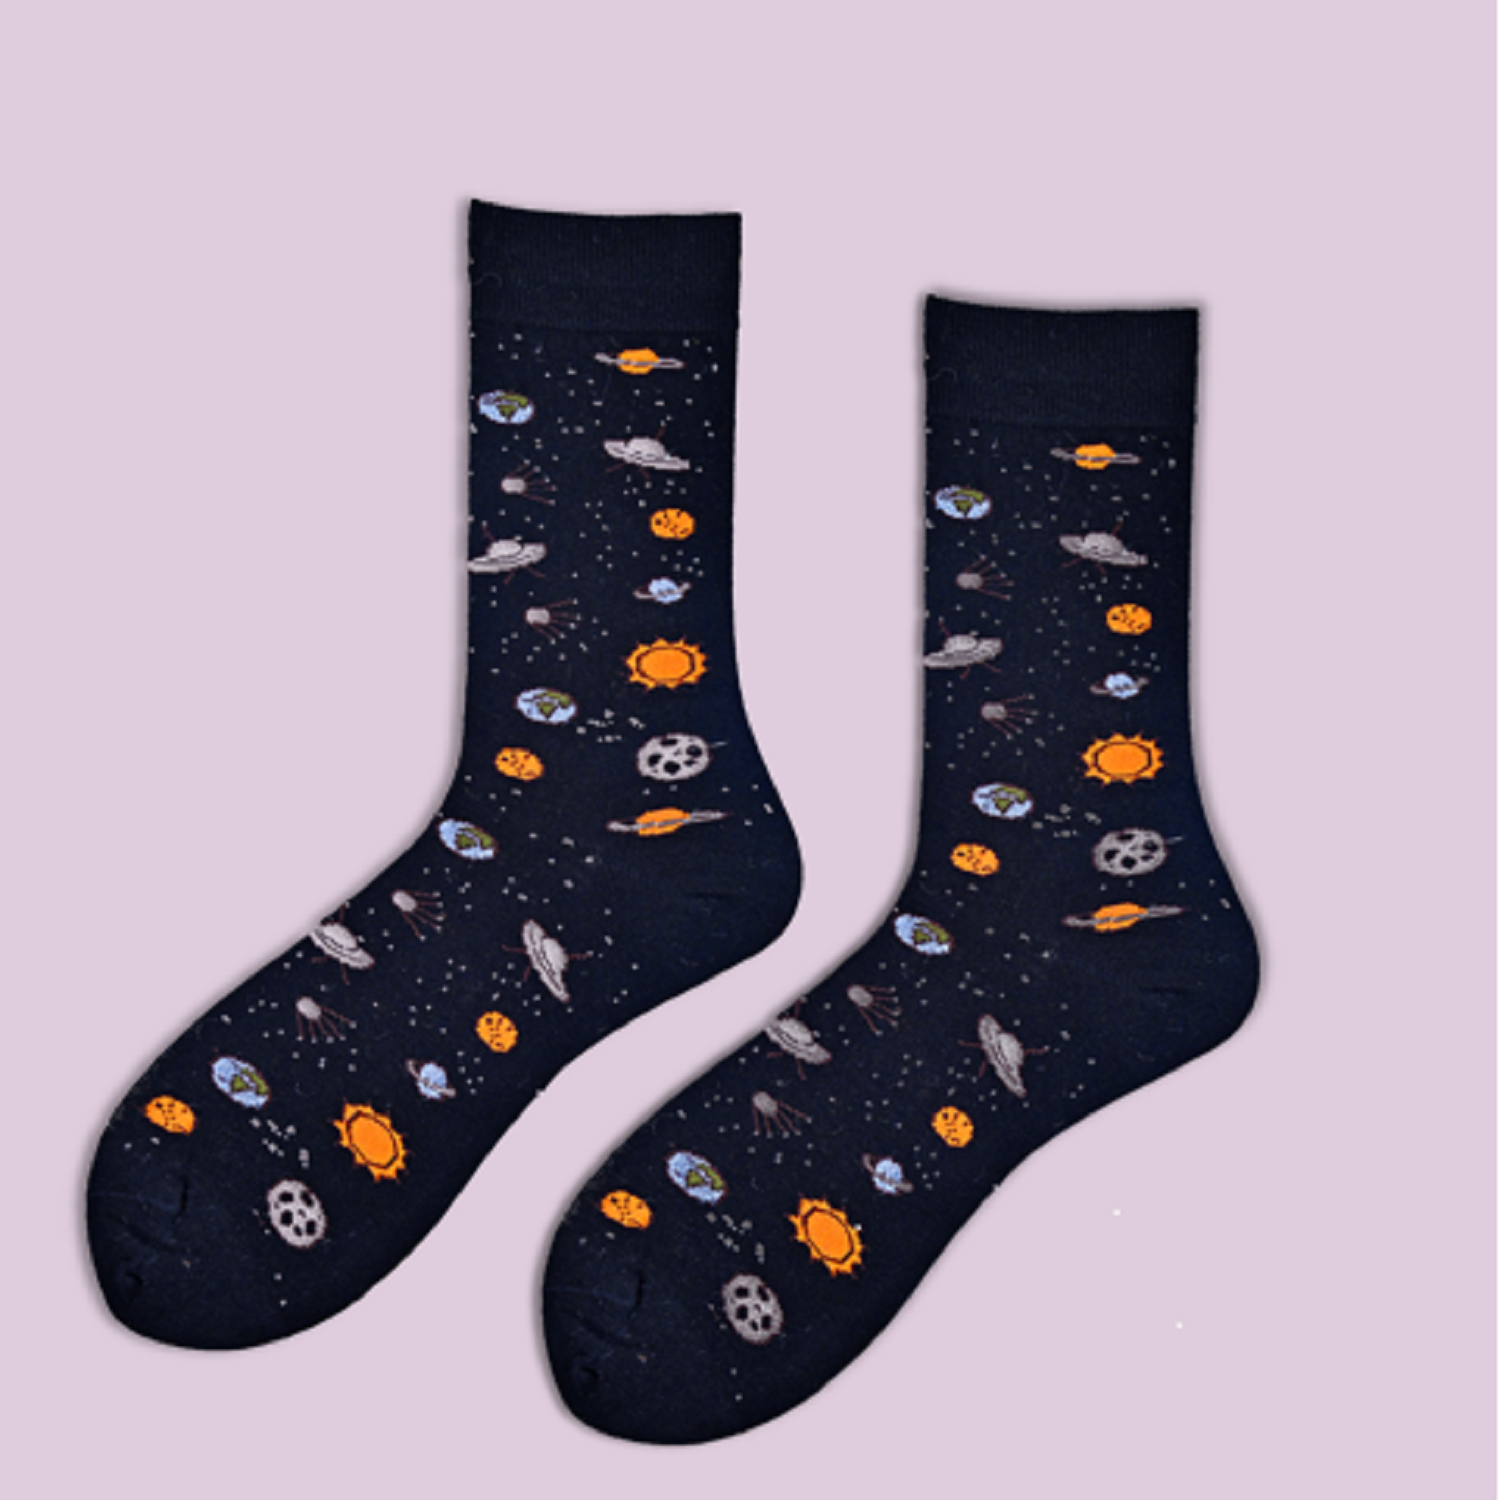 Spaceman | Black Mid-Calf Socks For Men | 1 Pair